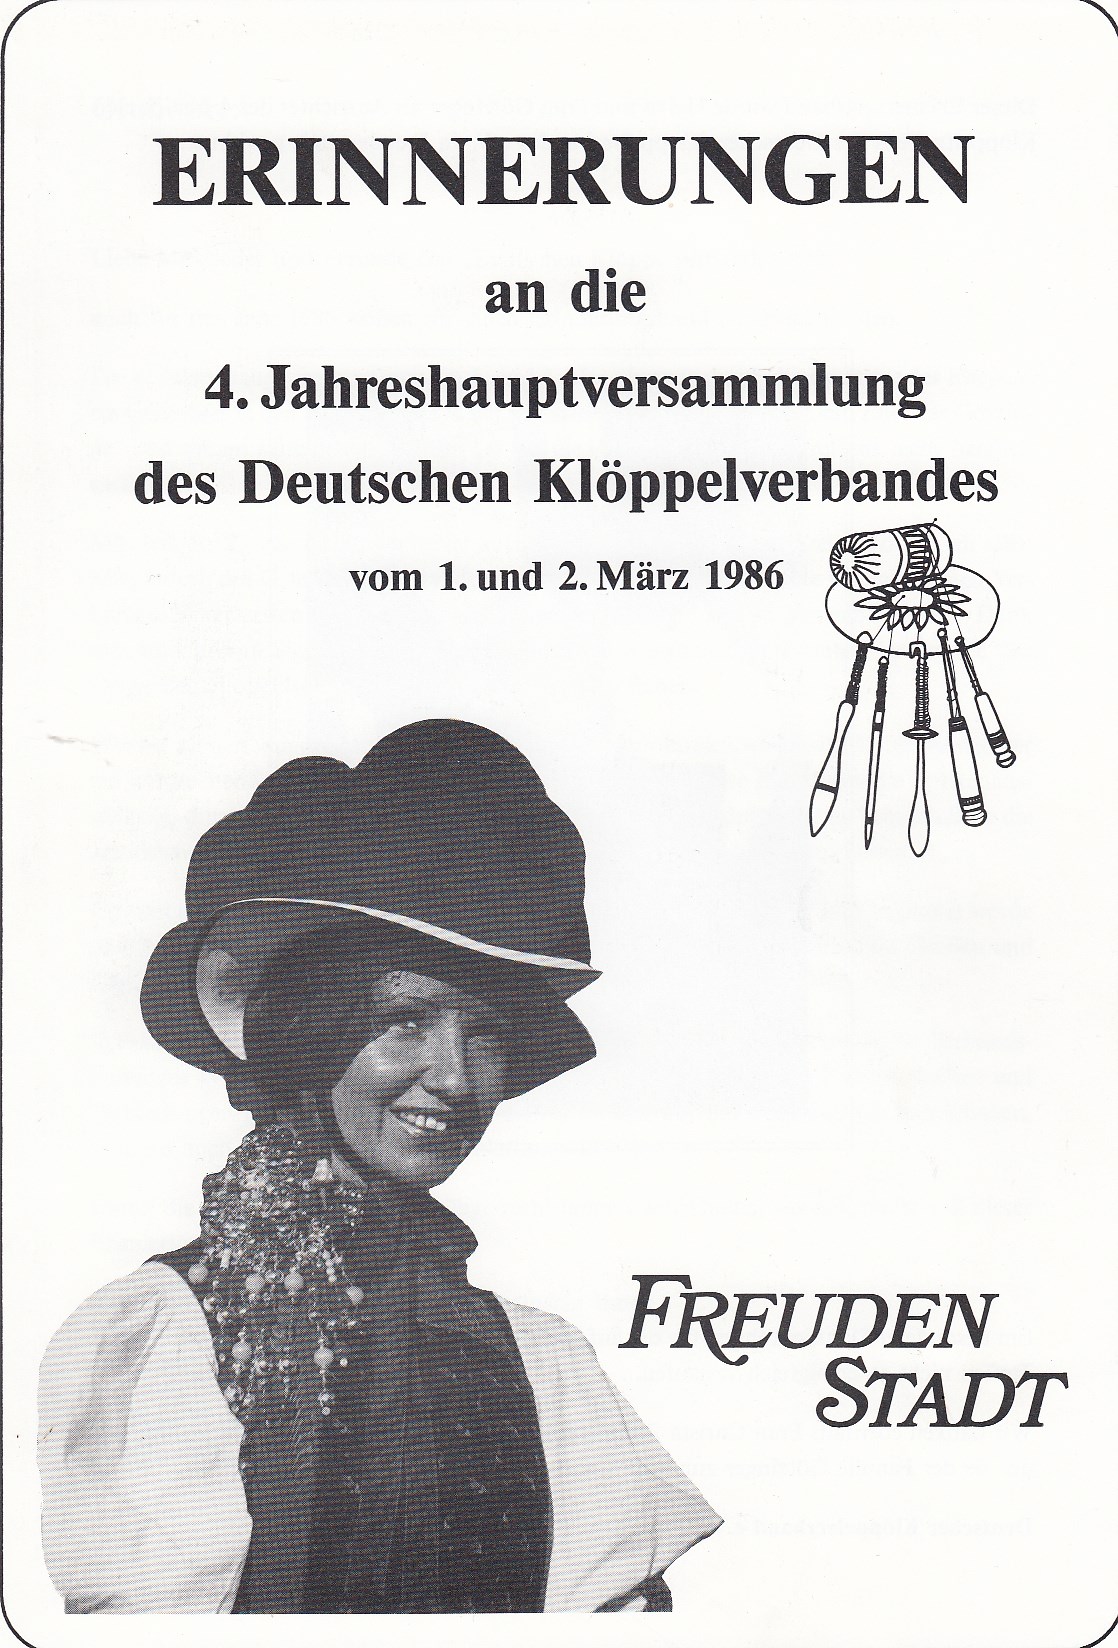 Erinnerungen an die 4. Jahreshauptversammlung des Deutschen Klöppelverbandes vom 1. und 2. März 1986 Freudenstadt